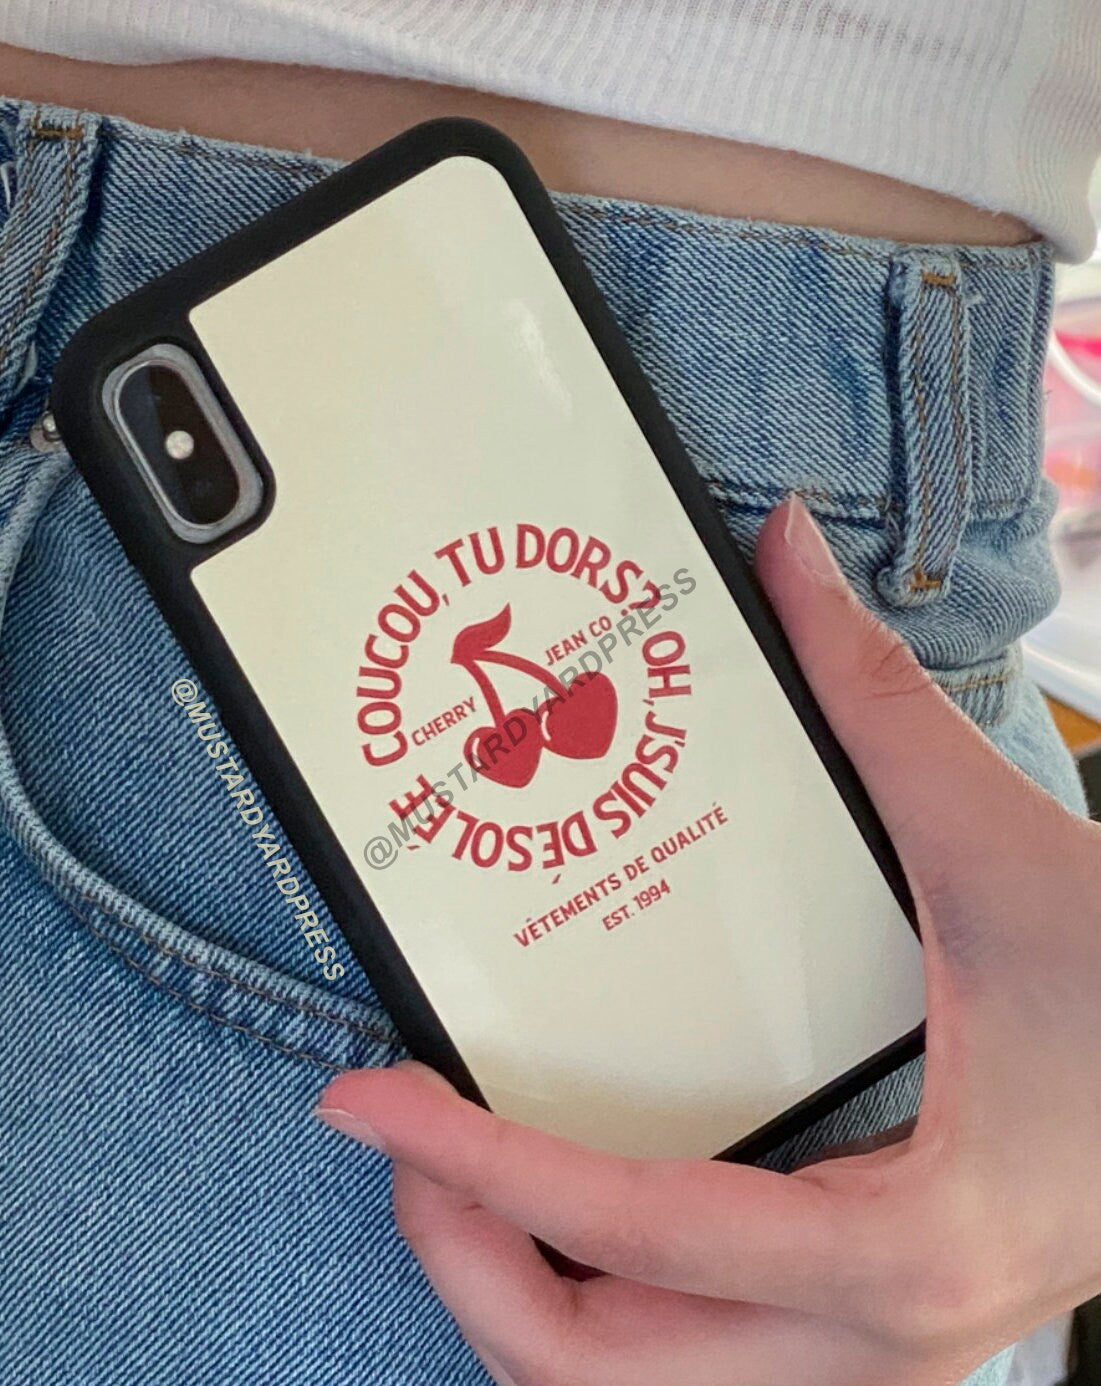 cherry phone case